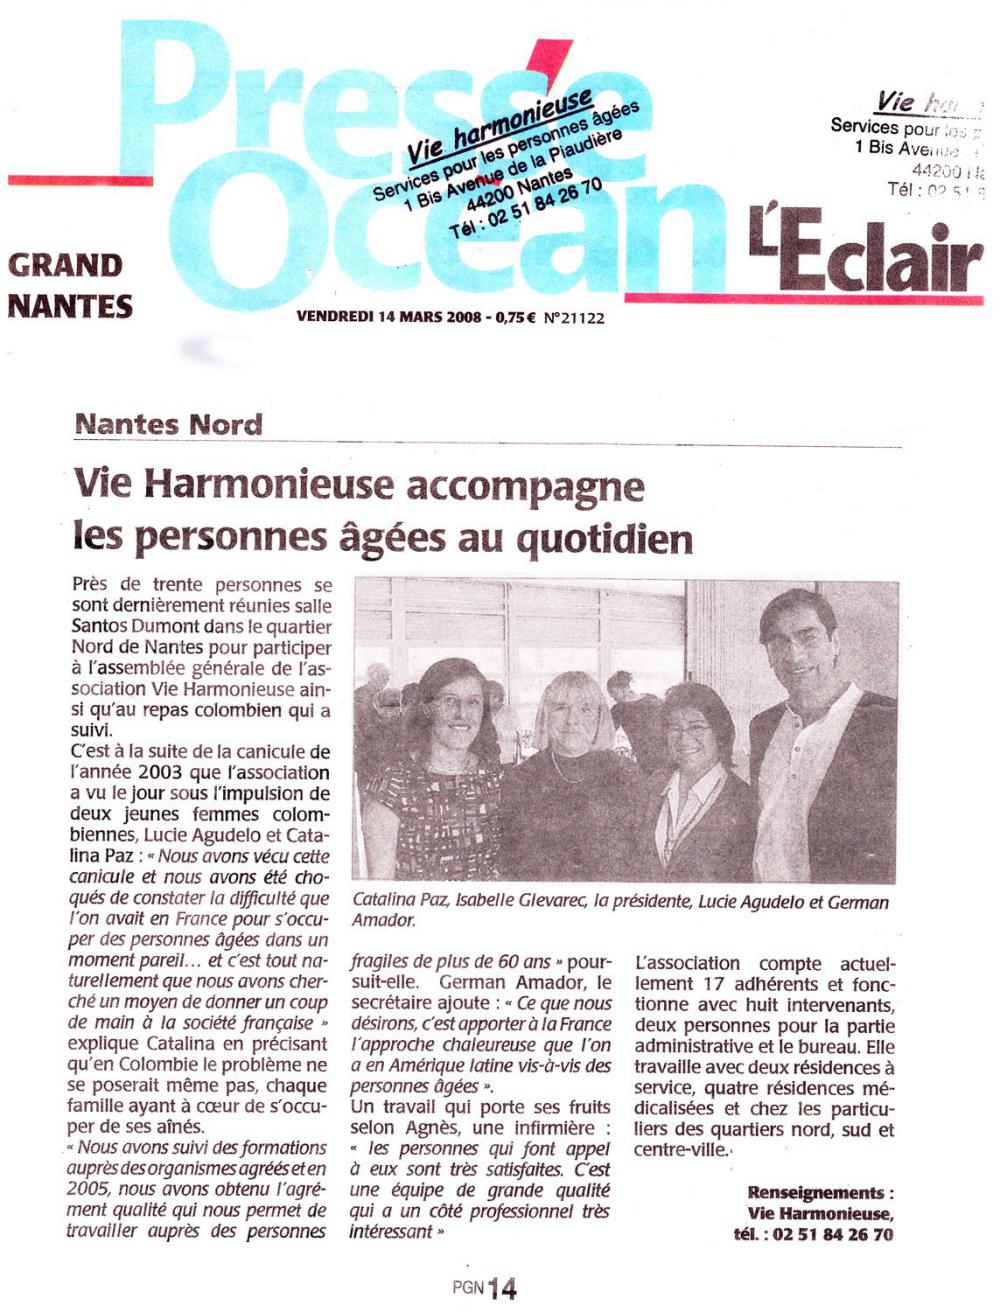 Vie harmonieuse accompagne les personnes âgées au quotidien
PRESSE OCÉAN - 14/03/20018 - LIRE L'ARTICLE